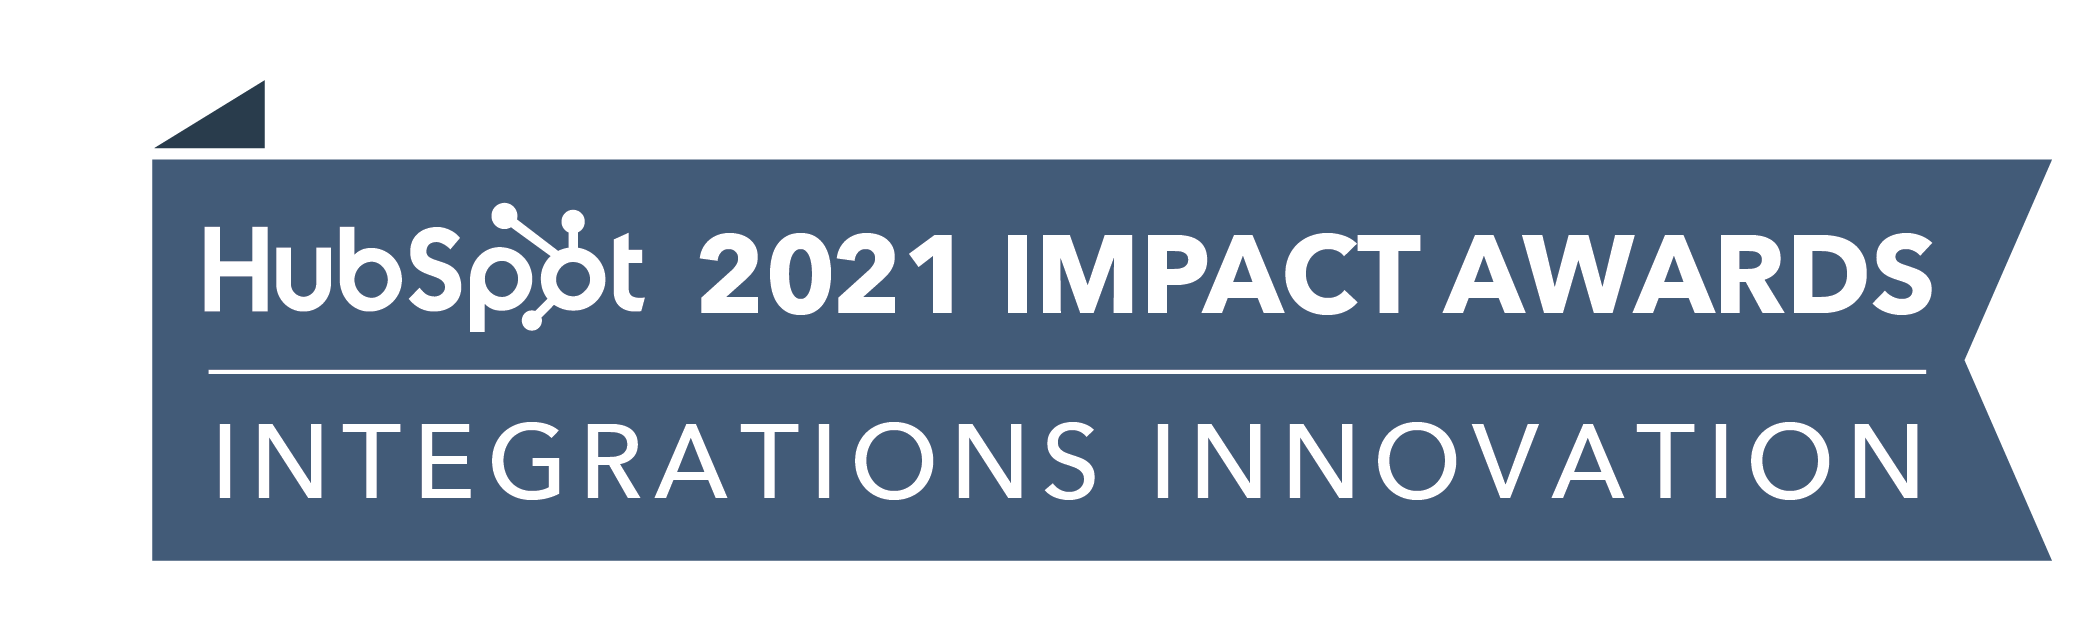 HubSpot_ImpactAwards_2021_IntegrationsInnov2-3